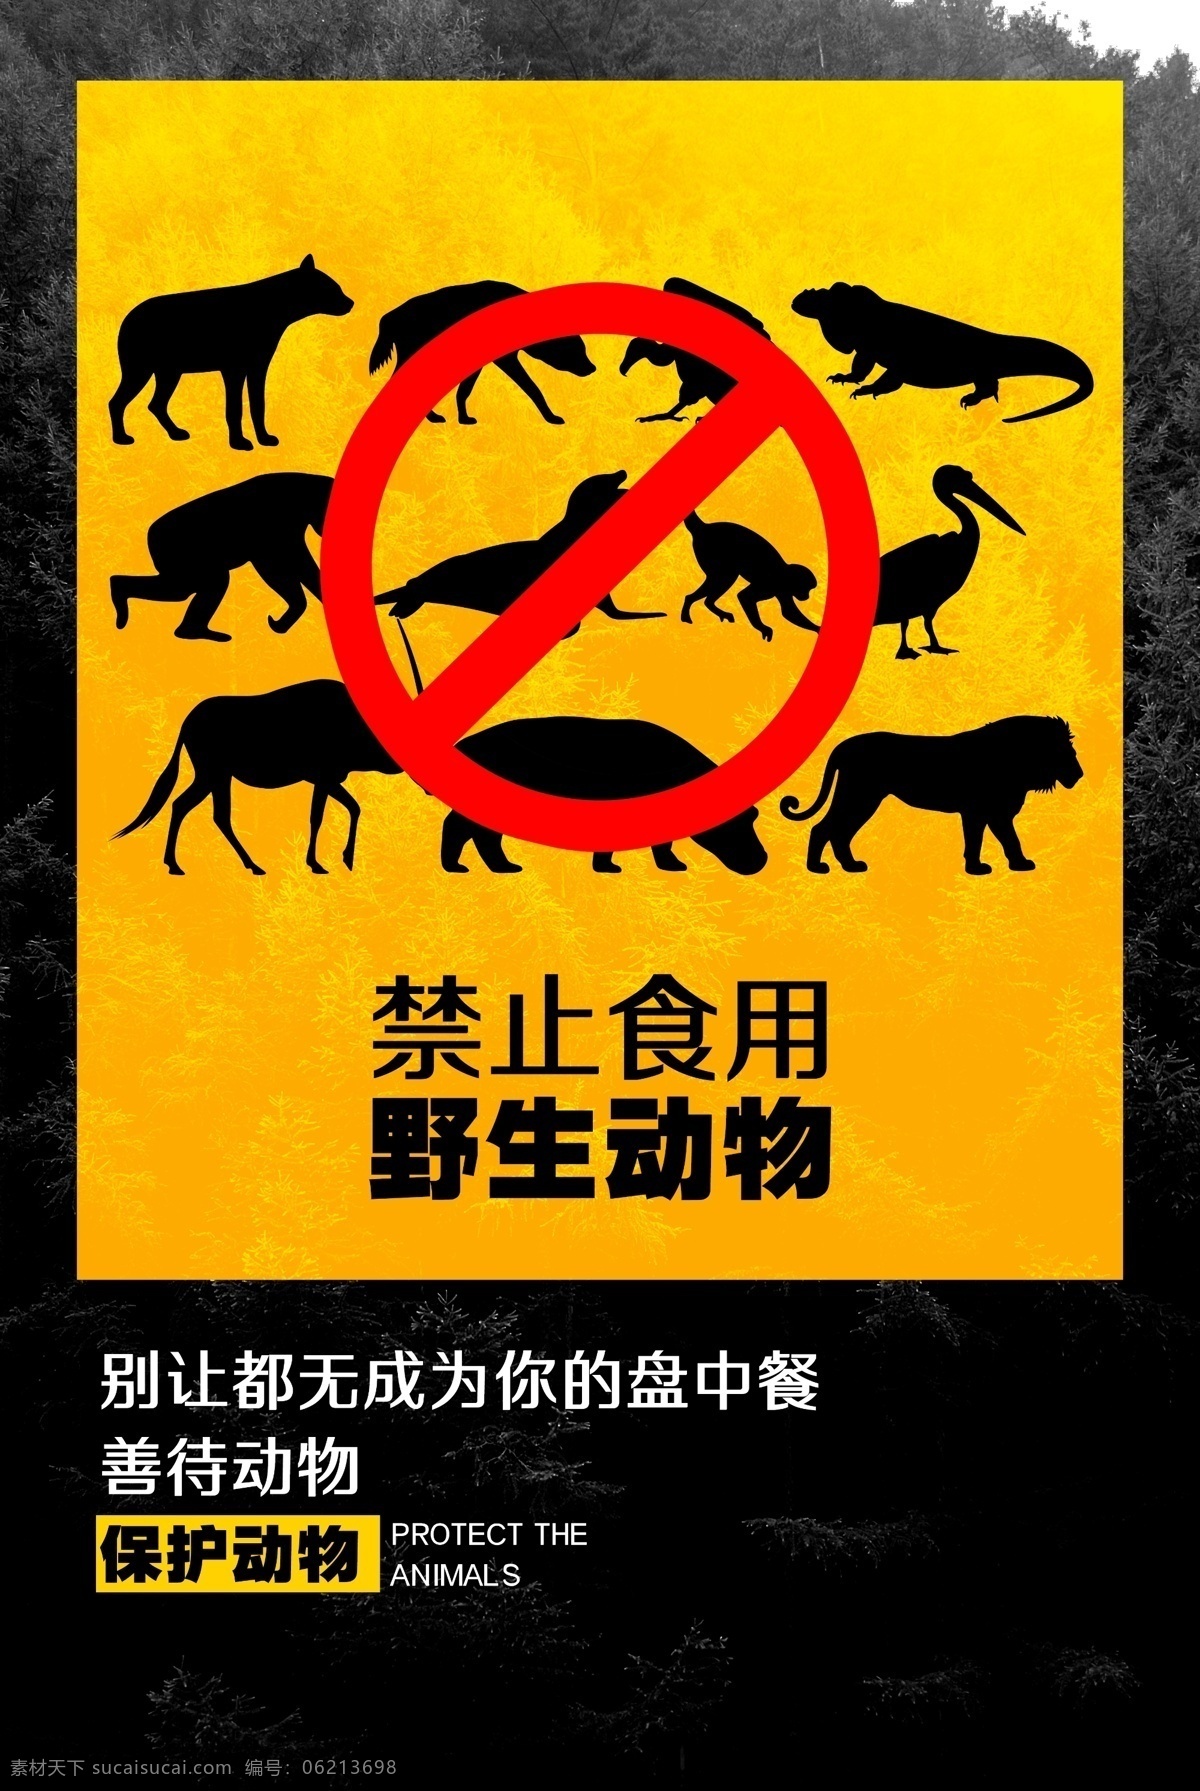 禁止 使用 野生动物 动物园海报 动物 保护野生动物 拒绝猎杀 展板 创意 动物协会 爱护动物 动物世界 生态平衡 保护生物 自然保护区 关爱野生动物 微信 保护动物宣传 野生动物展板 狮子 公益广告 微海报 大象 海报 宣传单 动物王国 珍惜动物 动物画册 动物保护日